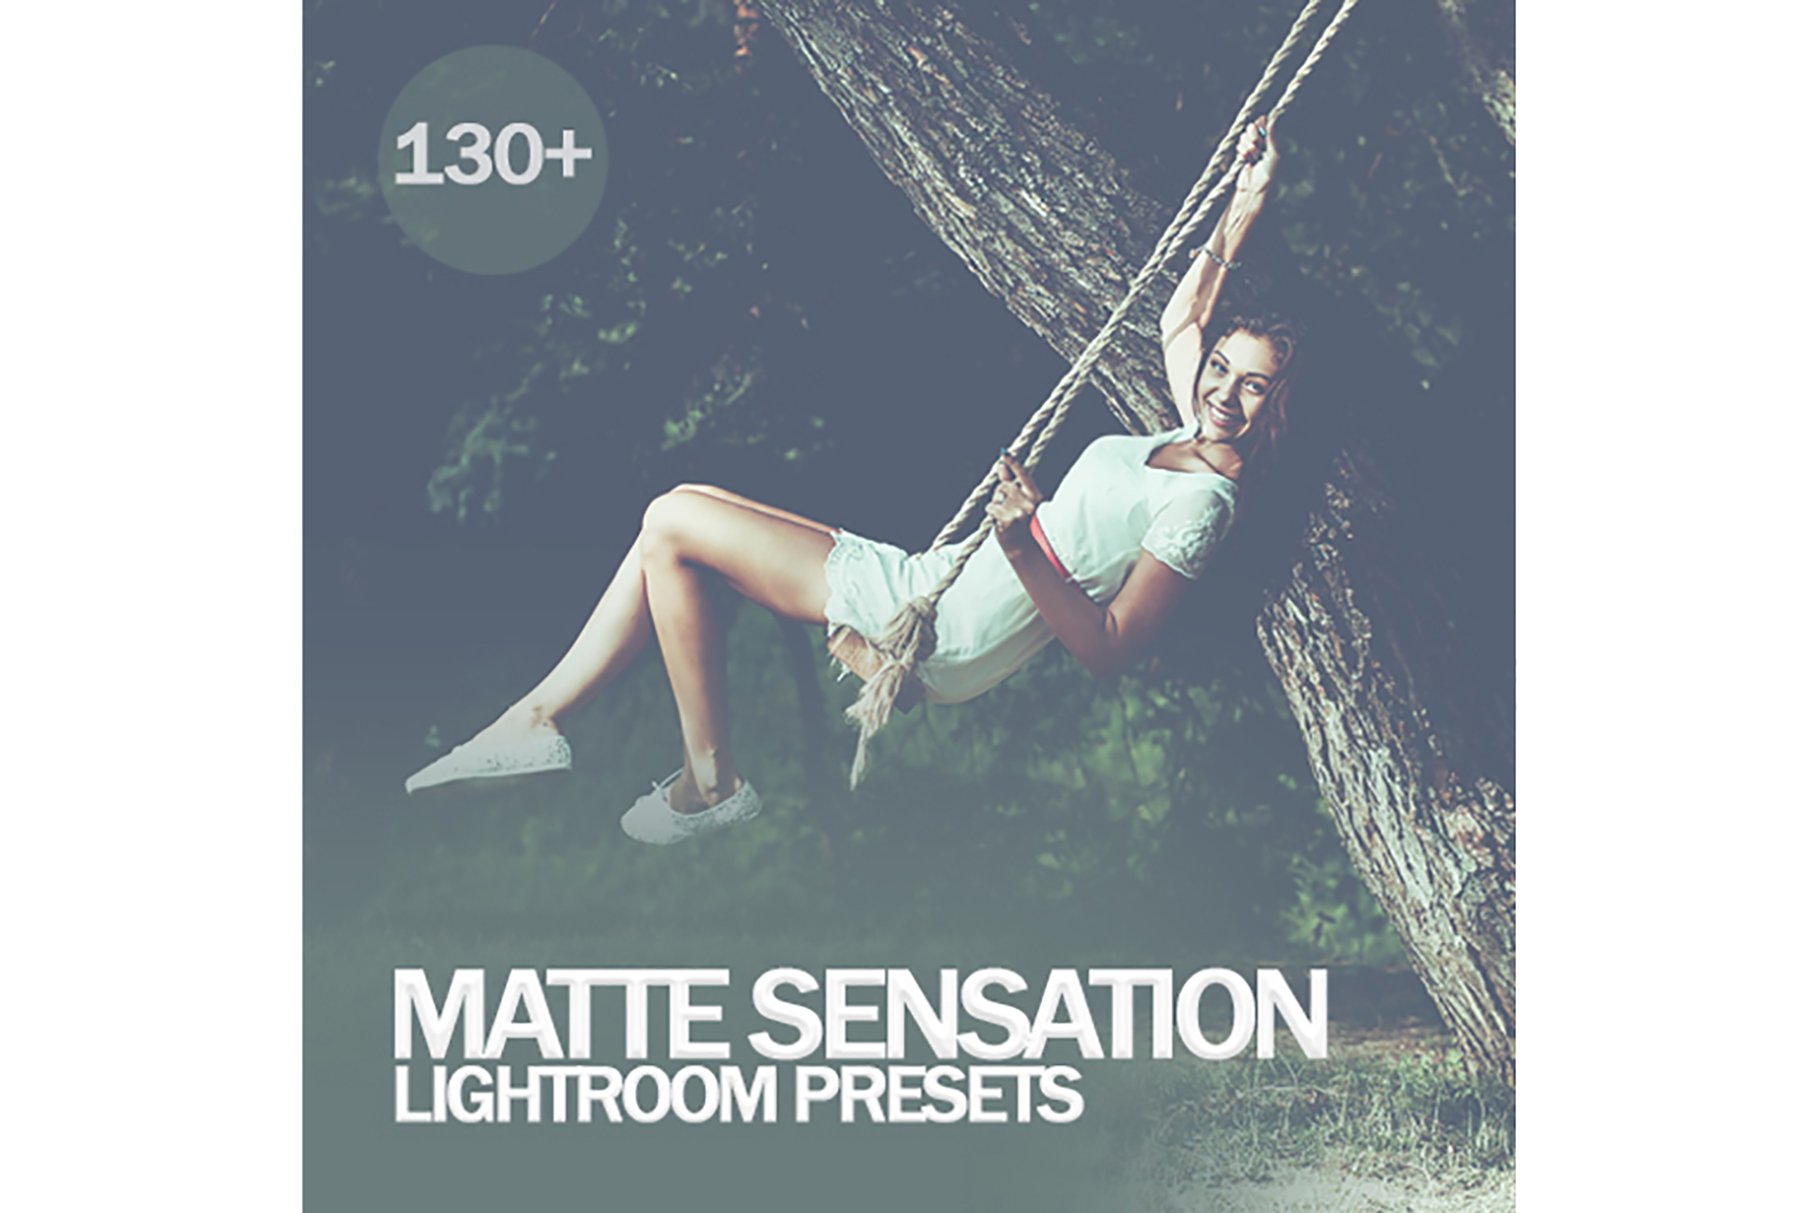 Matte Sensation Lightroom Presetscover image.